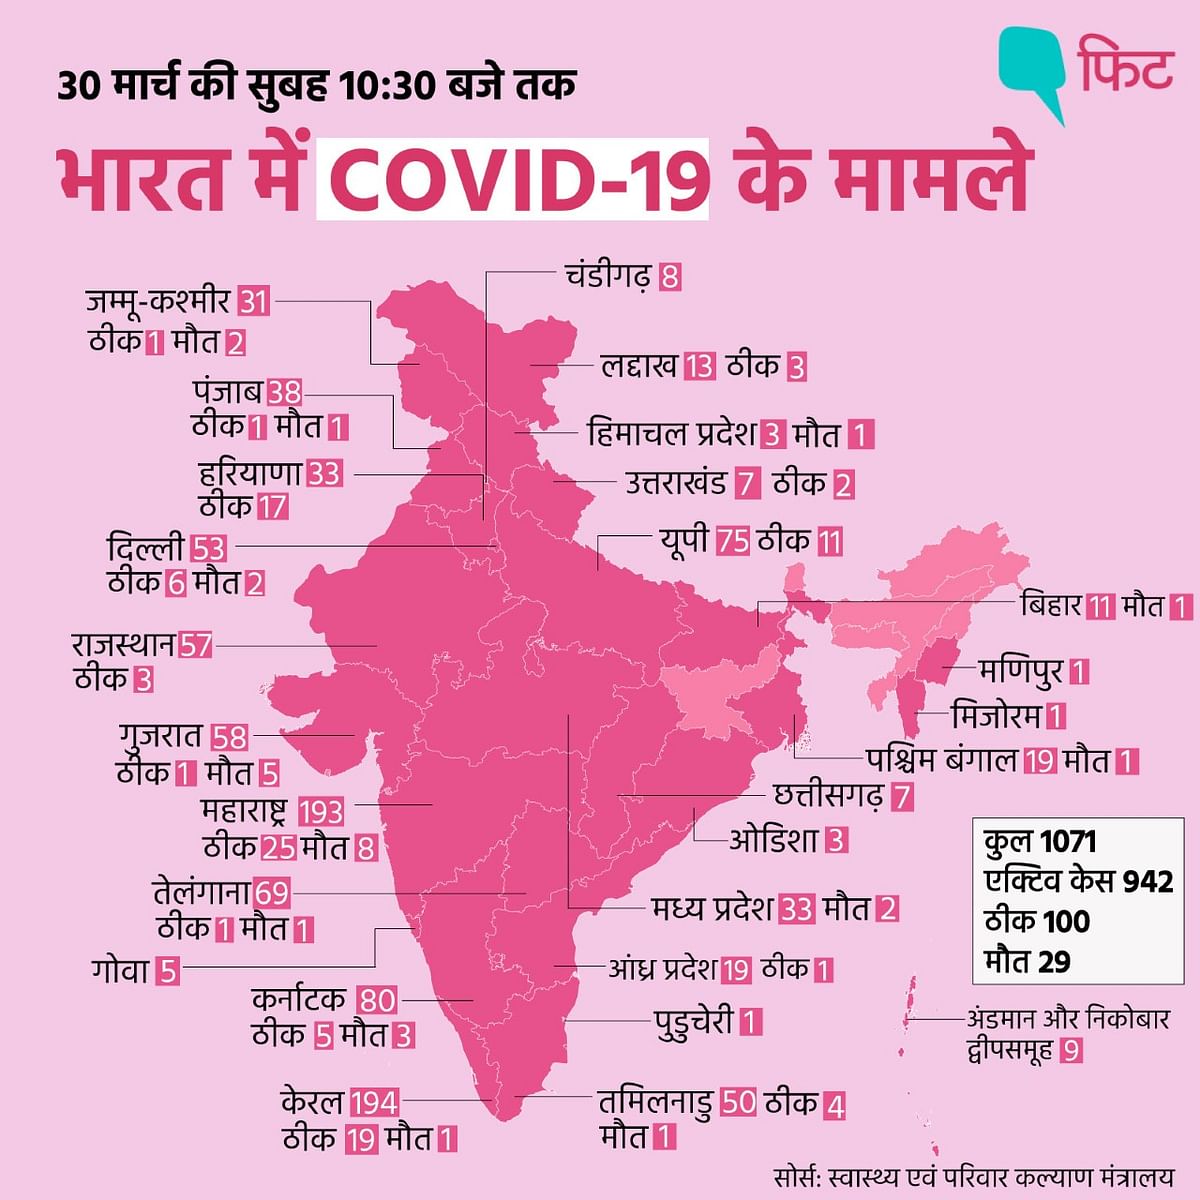 भारत में लगातार बढ़ रहे हैं कोरोना वायरस के मामले